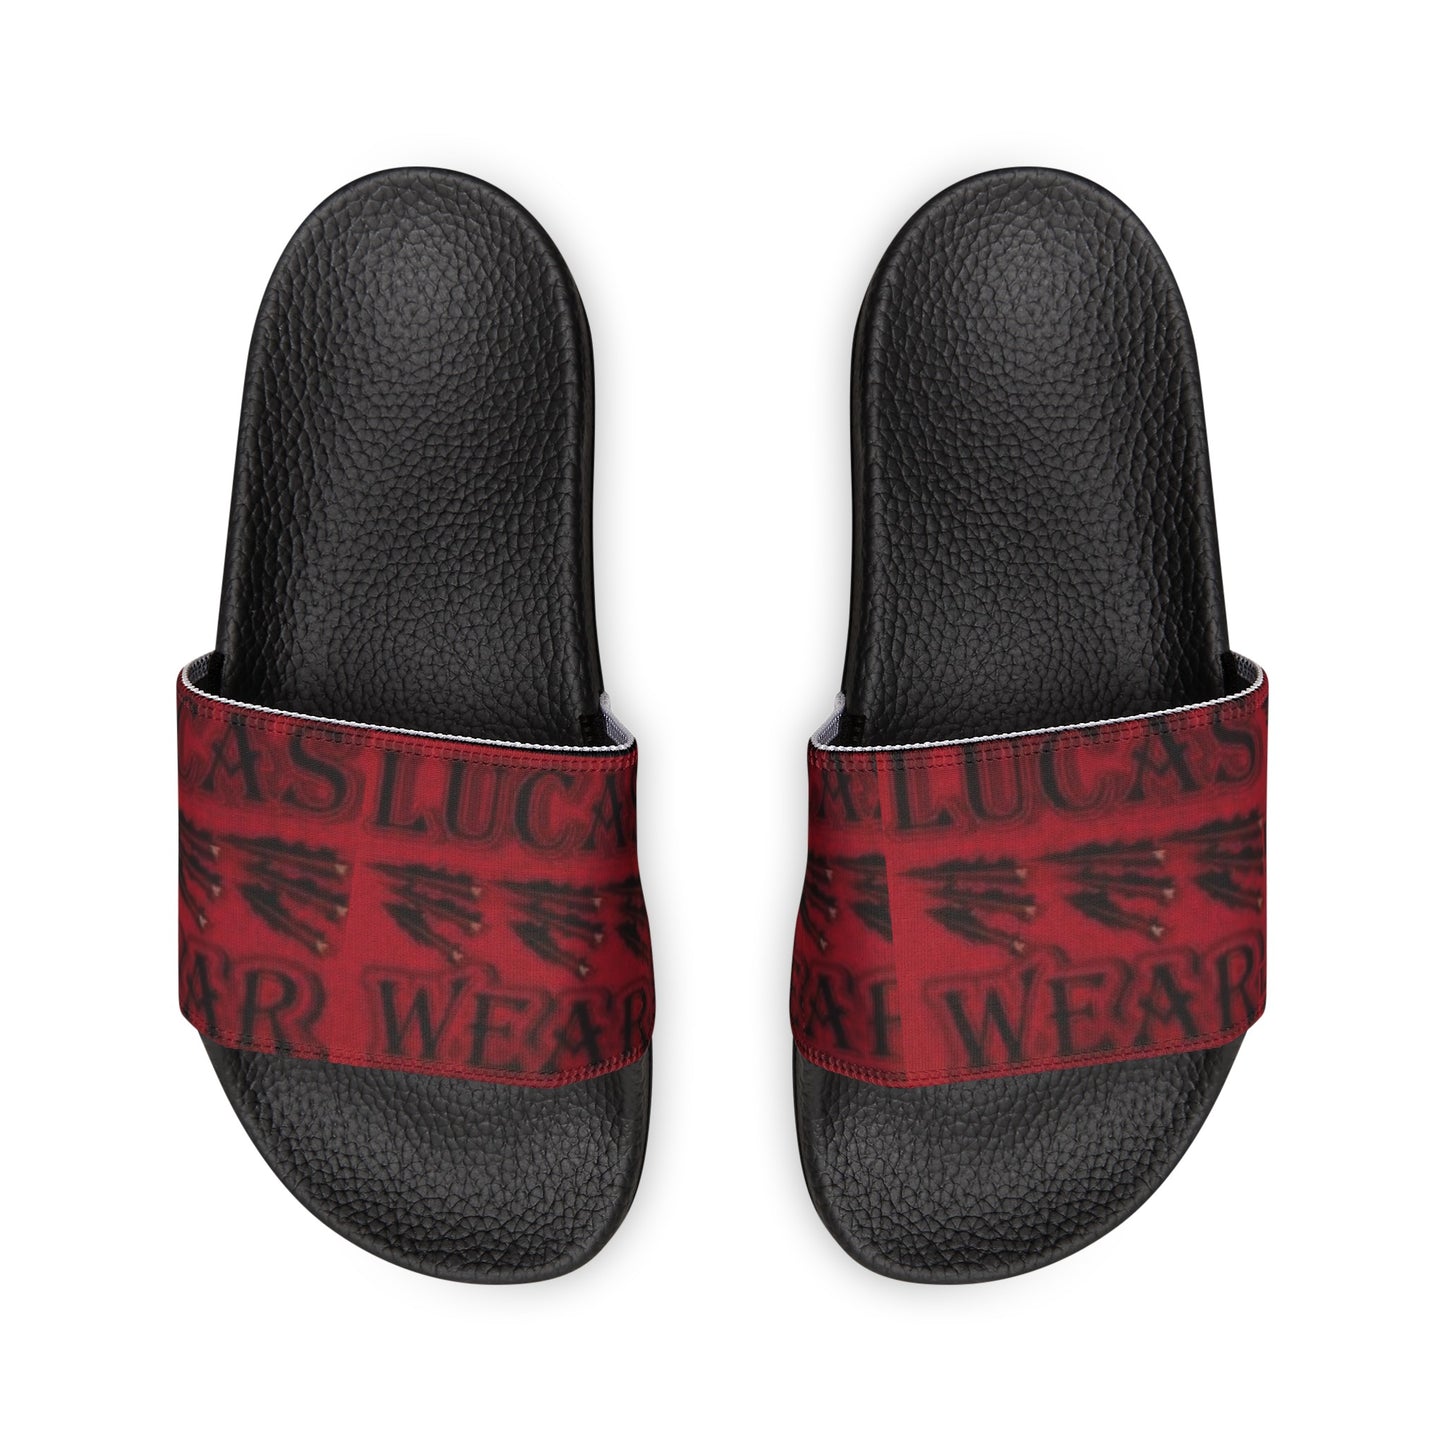 Lucas Wear Men And Women(PU Slide Sandals)